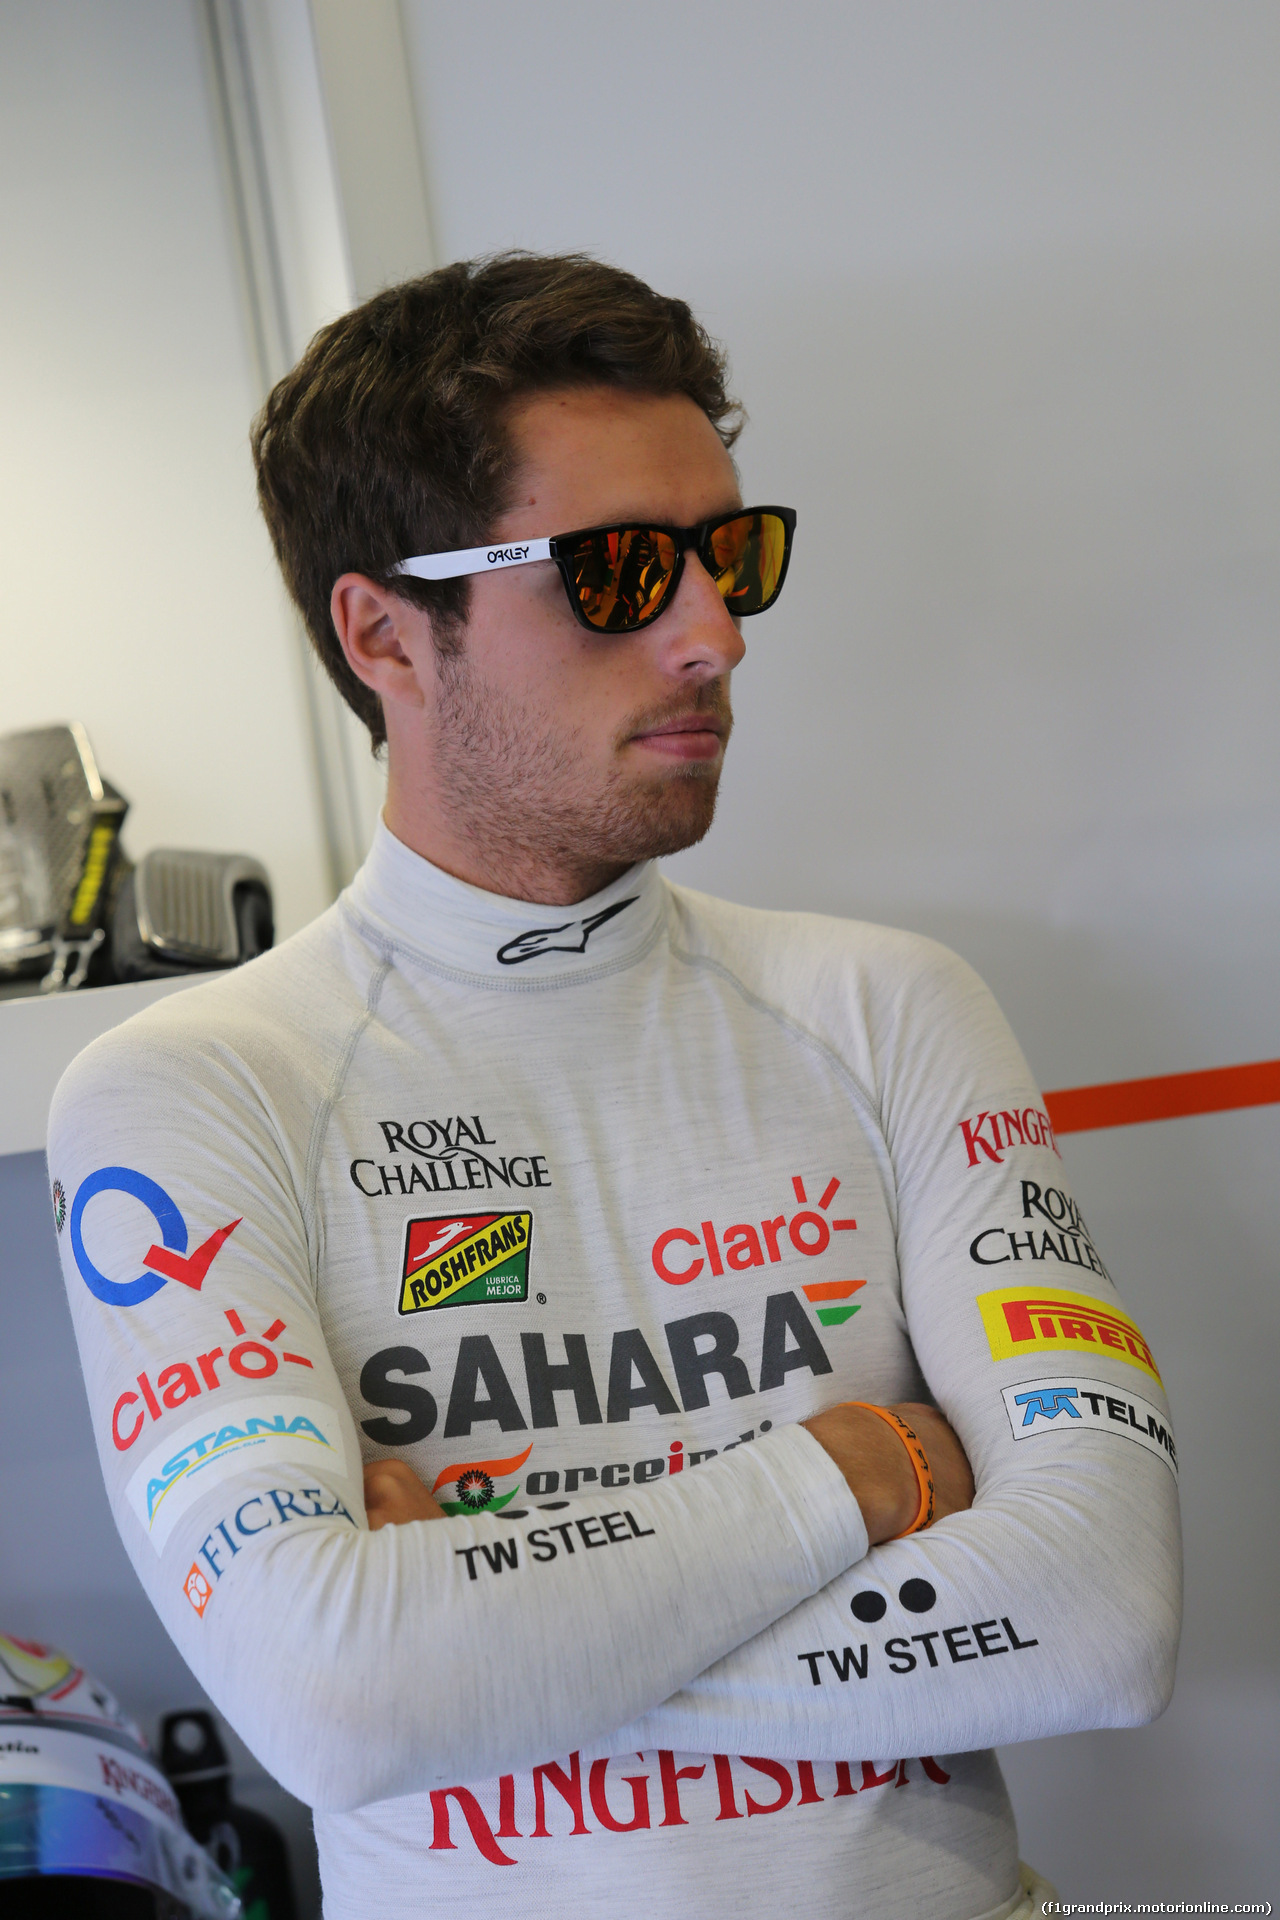 GP GRAN BRETAGNA, 04.07.2014 - Prove Libere 1, Daniel Juncadella (ESP) Sahara Force India F1 Team Test e Reserve Driver